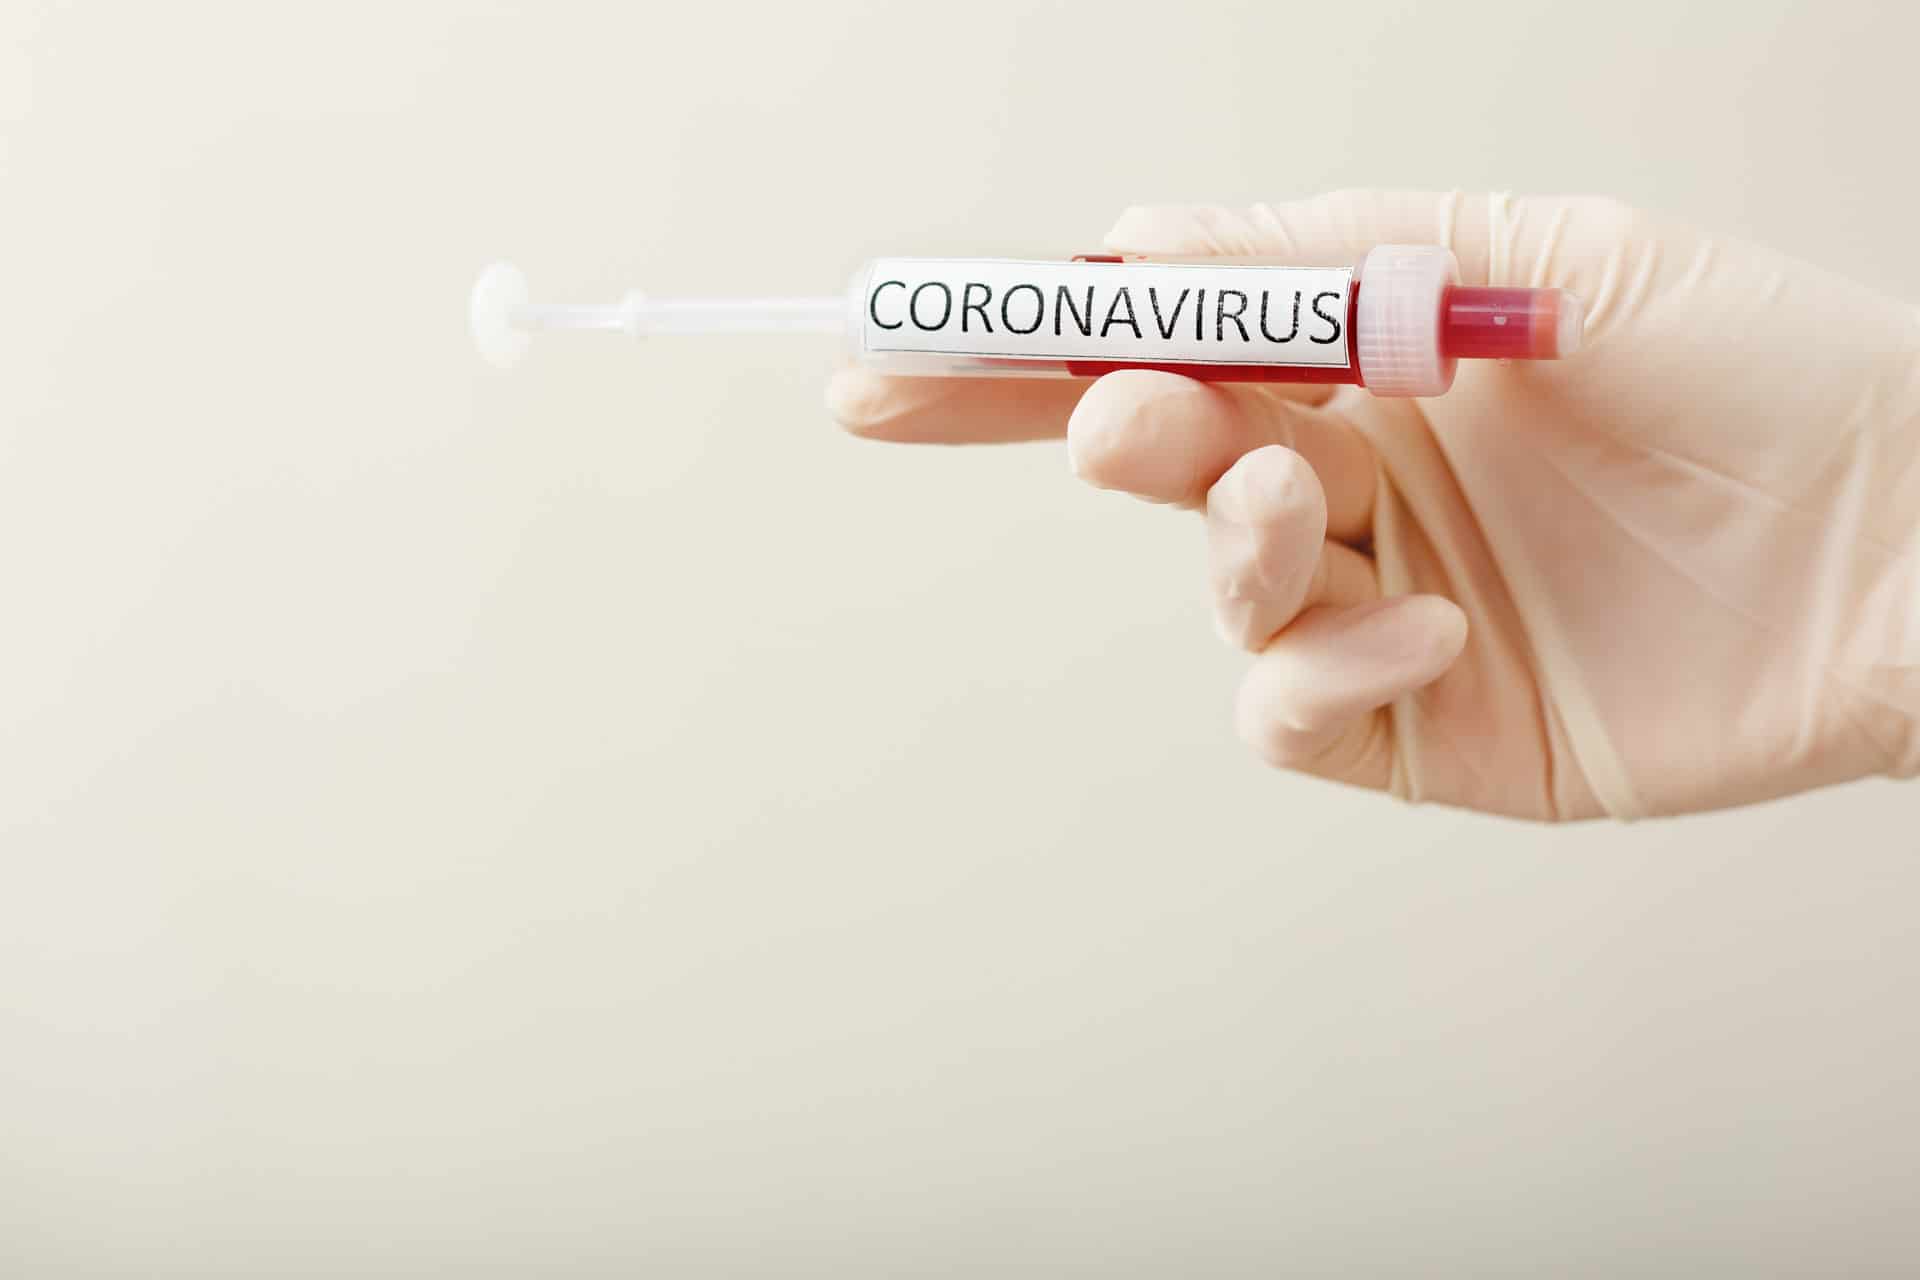 Și România este afectată de coronavirus.